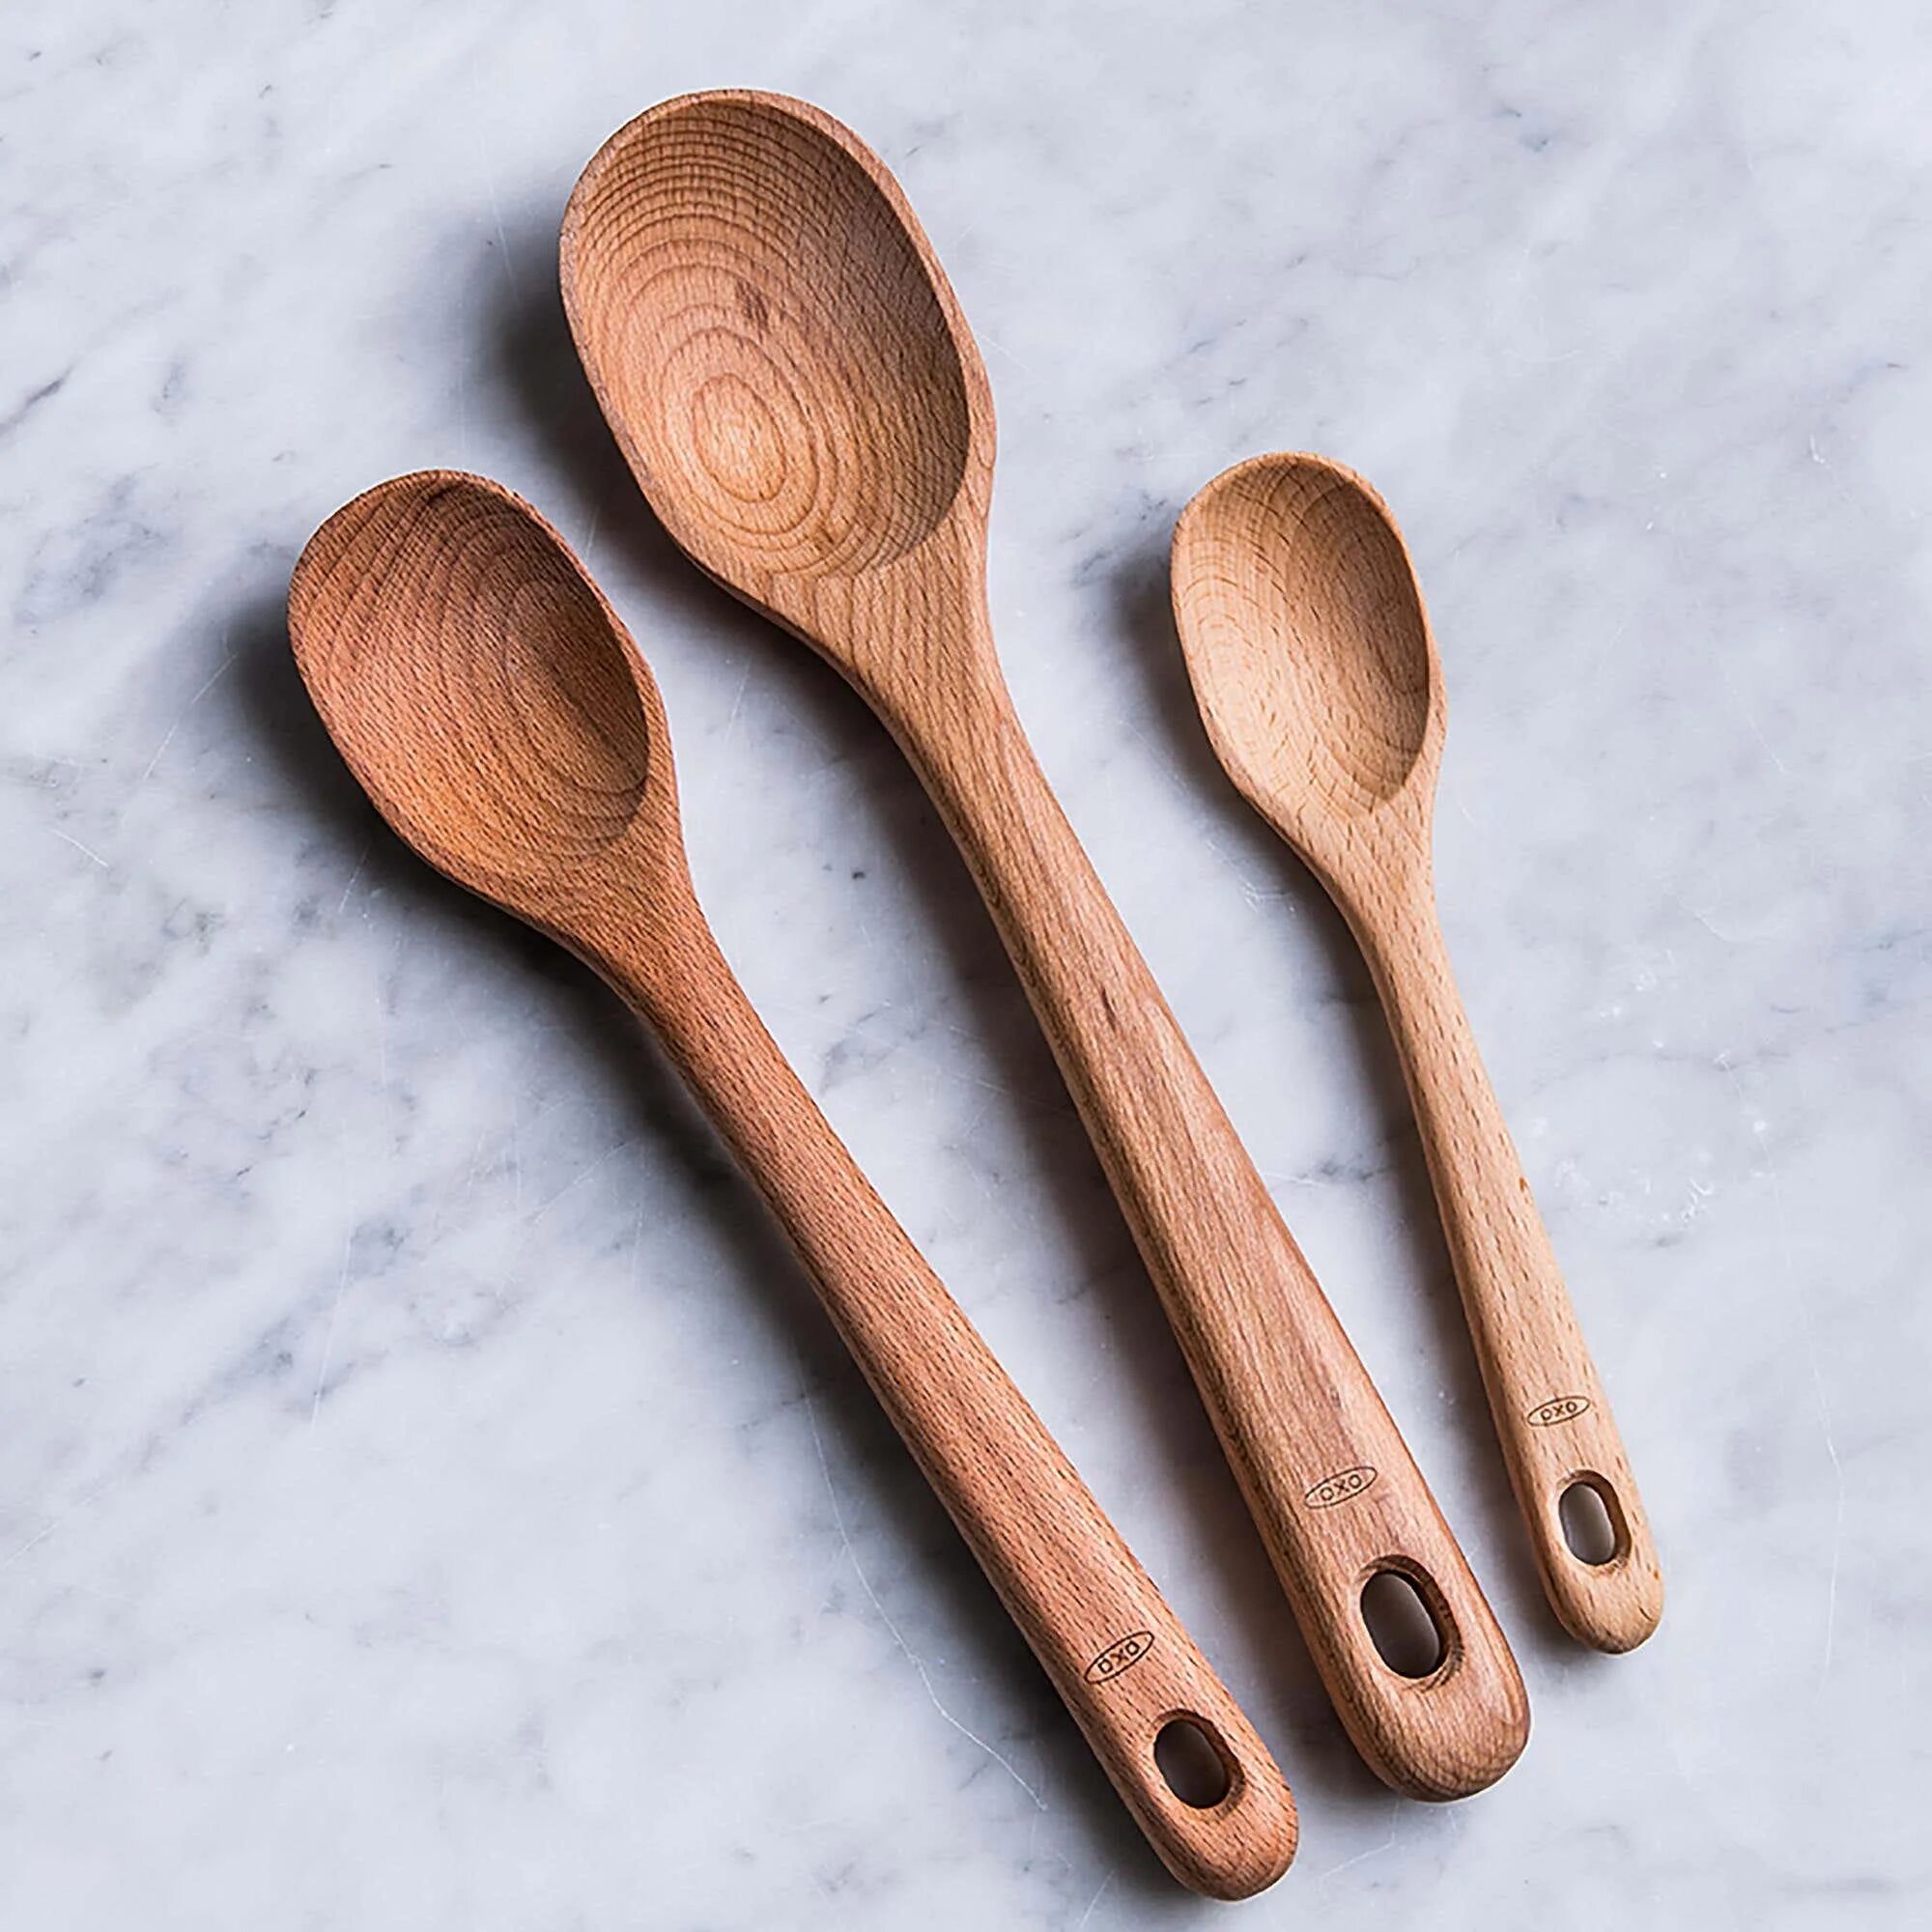 Wooden spoon. Spoon деревянная. Ложка бамбуковая Natura /1897/. Wooden Tripos Spoon. Деревянные Spoons в Кембридже.